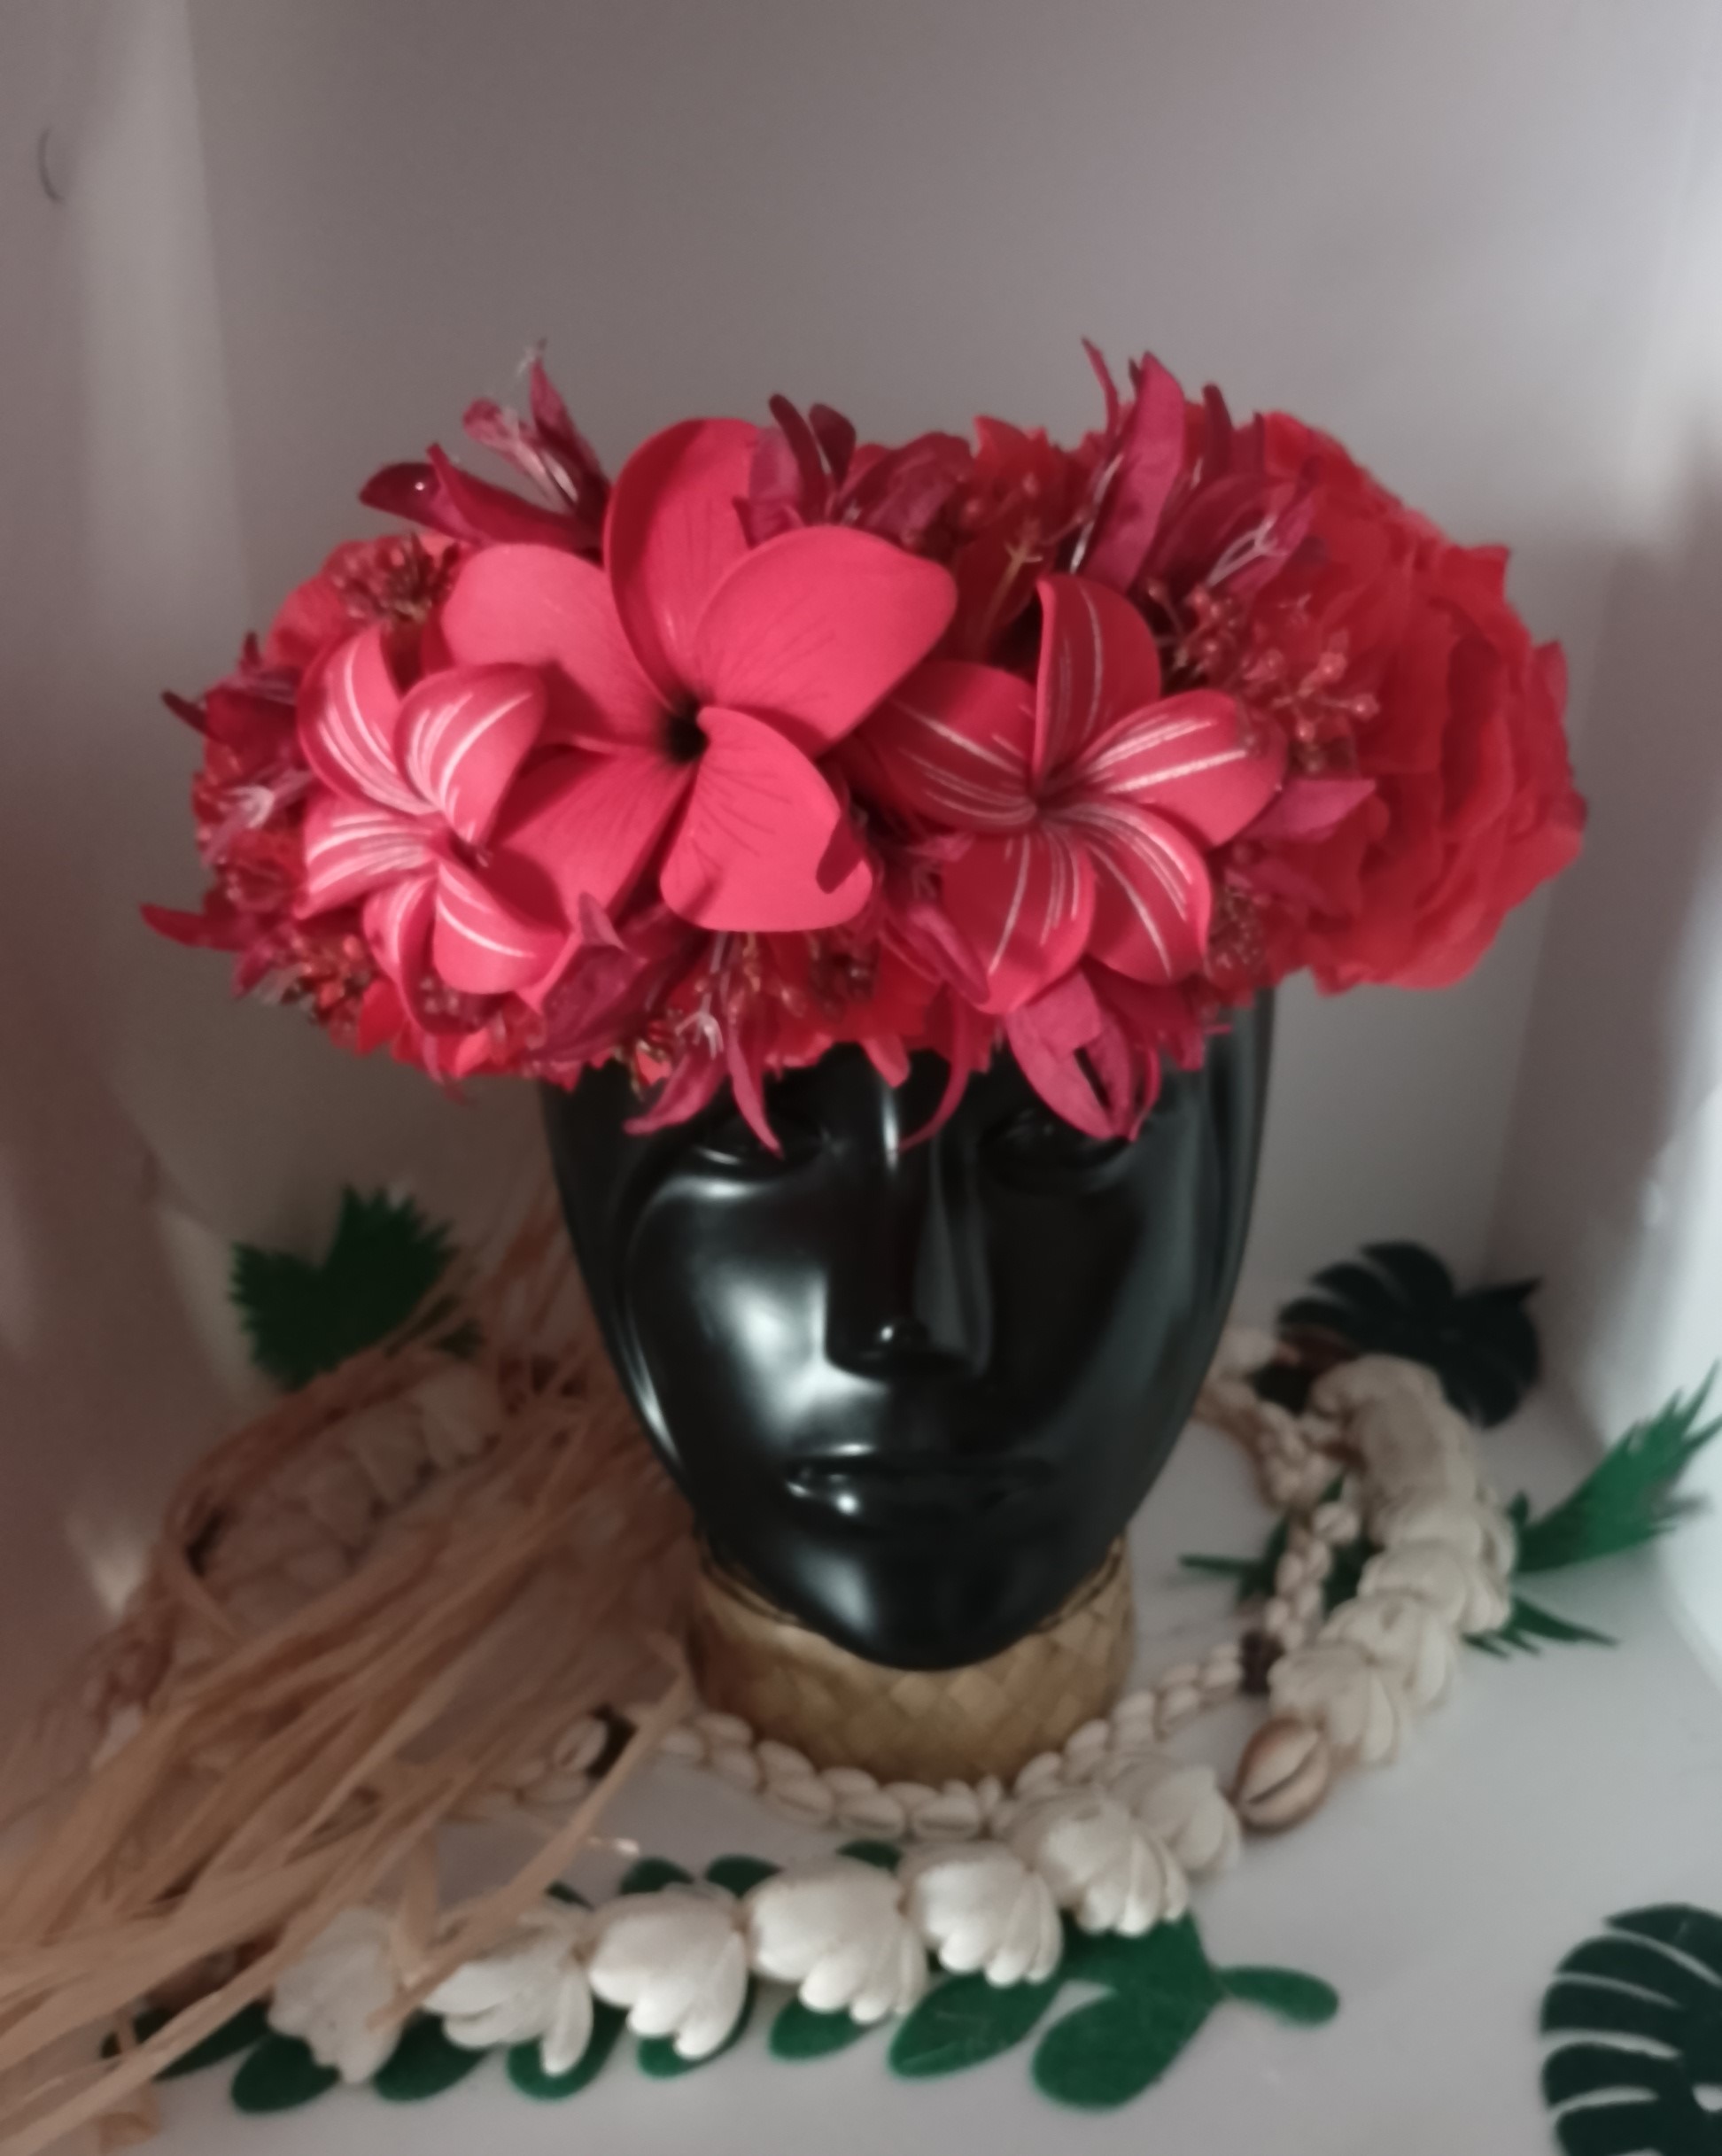 couronne de fleur rouge grand tipanier et tiapniers rainurés moyens avec lys élancés rouges by Vaite.e.Tiare créations